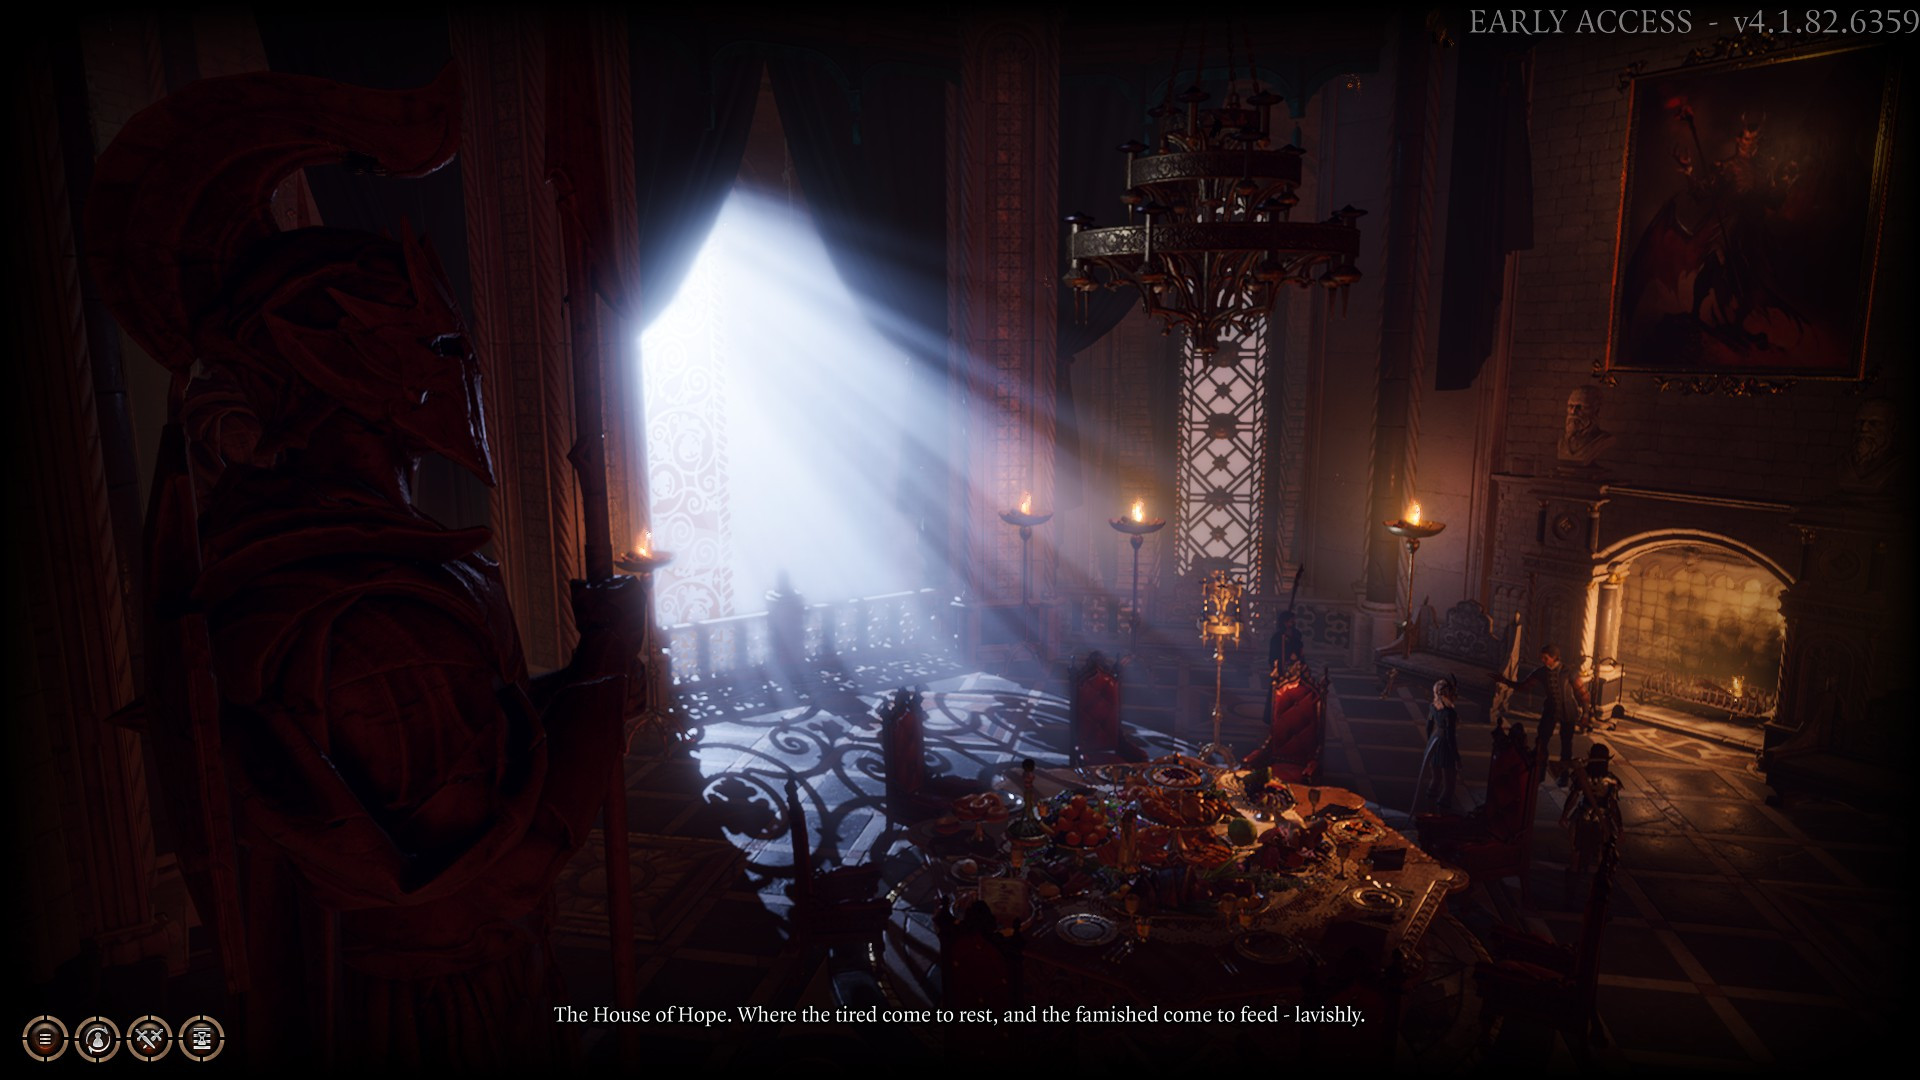 Превью Baldur's Gate 3 - самая интерактивная RPG по D&D